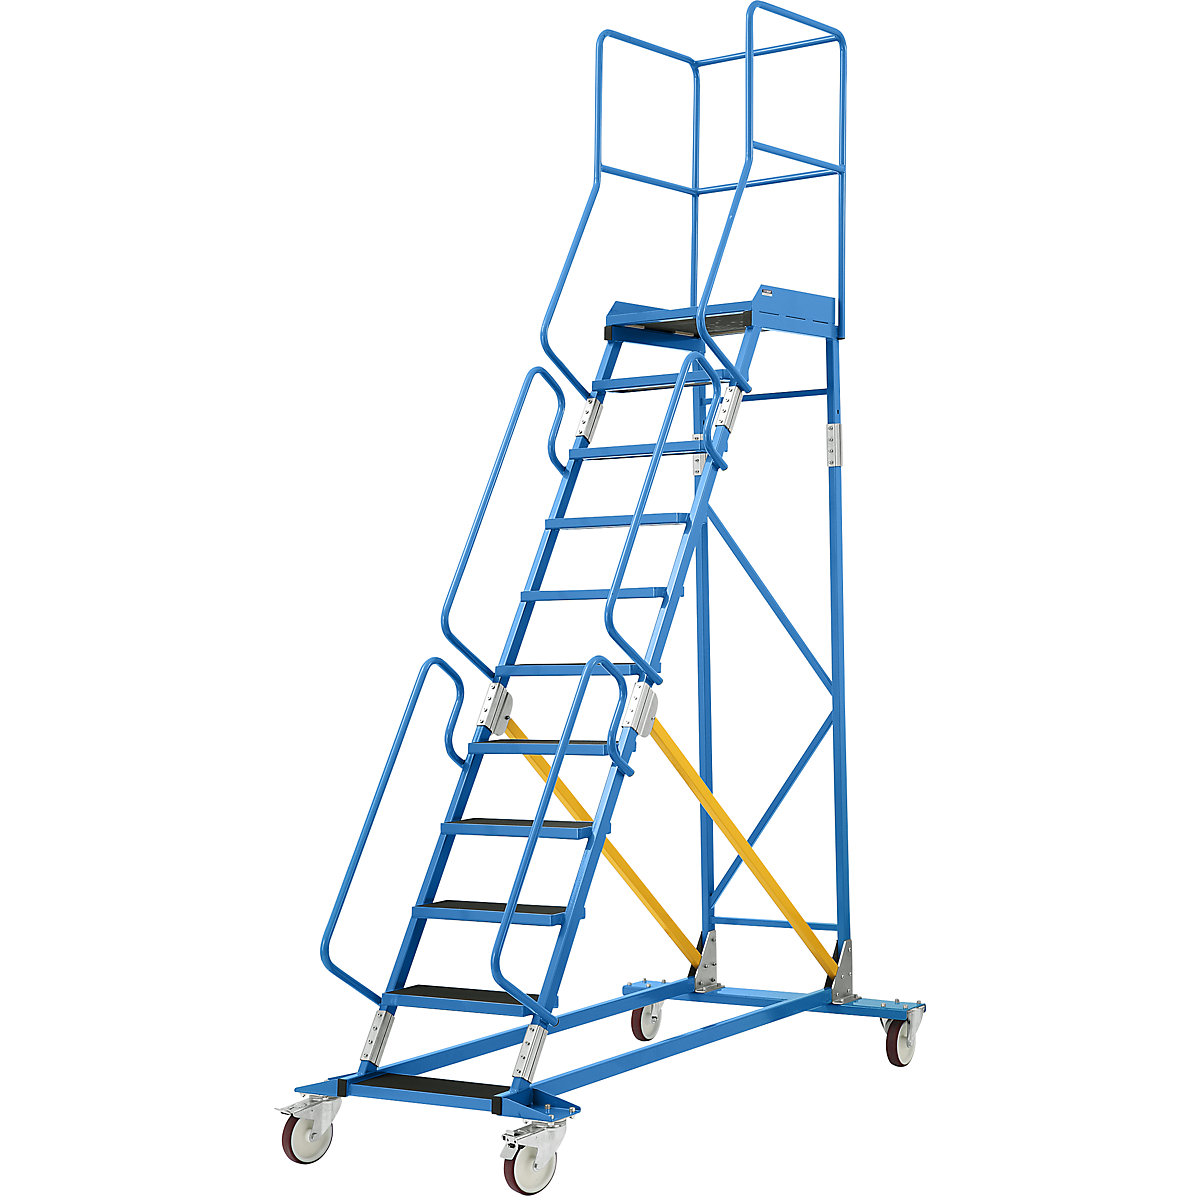 Escada de plataforma móvel – eurokraft pro, encaixe de degrau em borracha estriada, 11 degraus-22